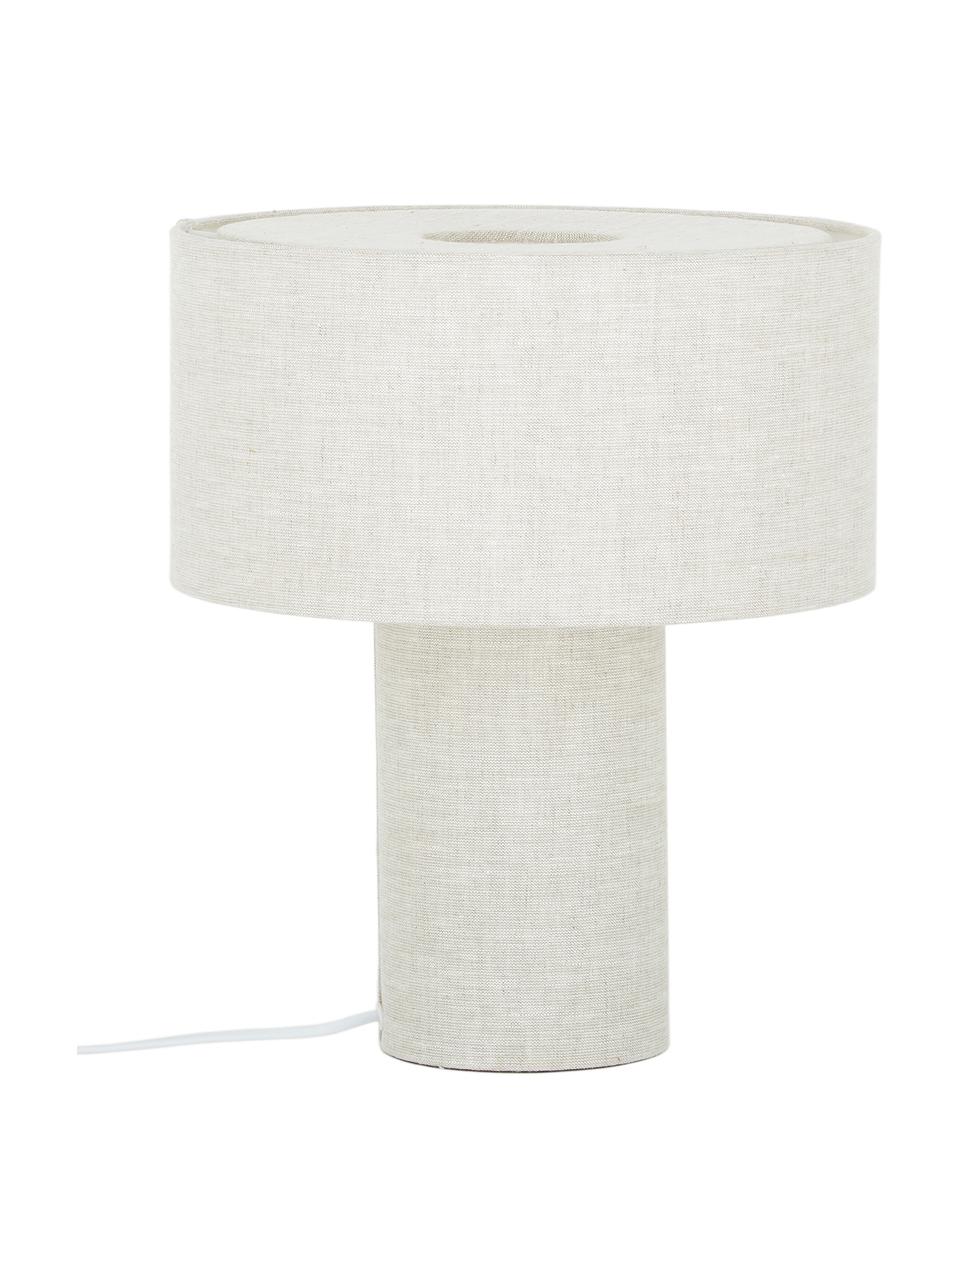 Tischlampe Ron in Beige, Lampenschirm: Textil, Lampenfuß: Textil, Beige, Ø 30 x H 35 cm